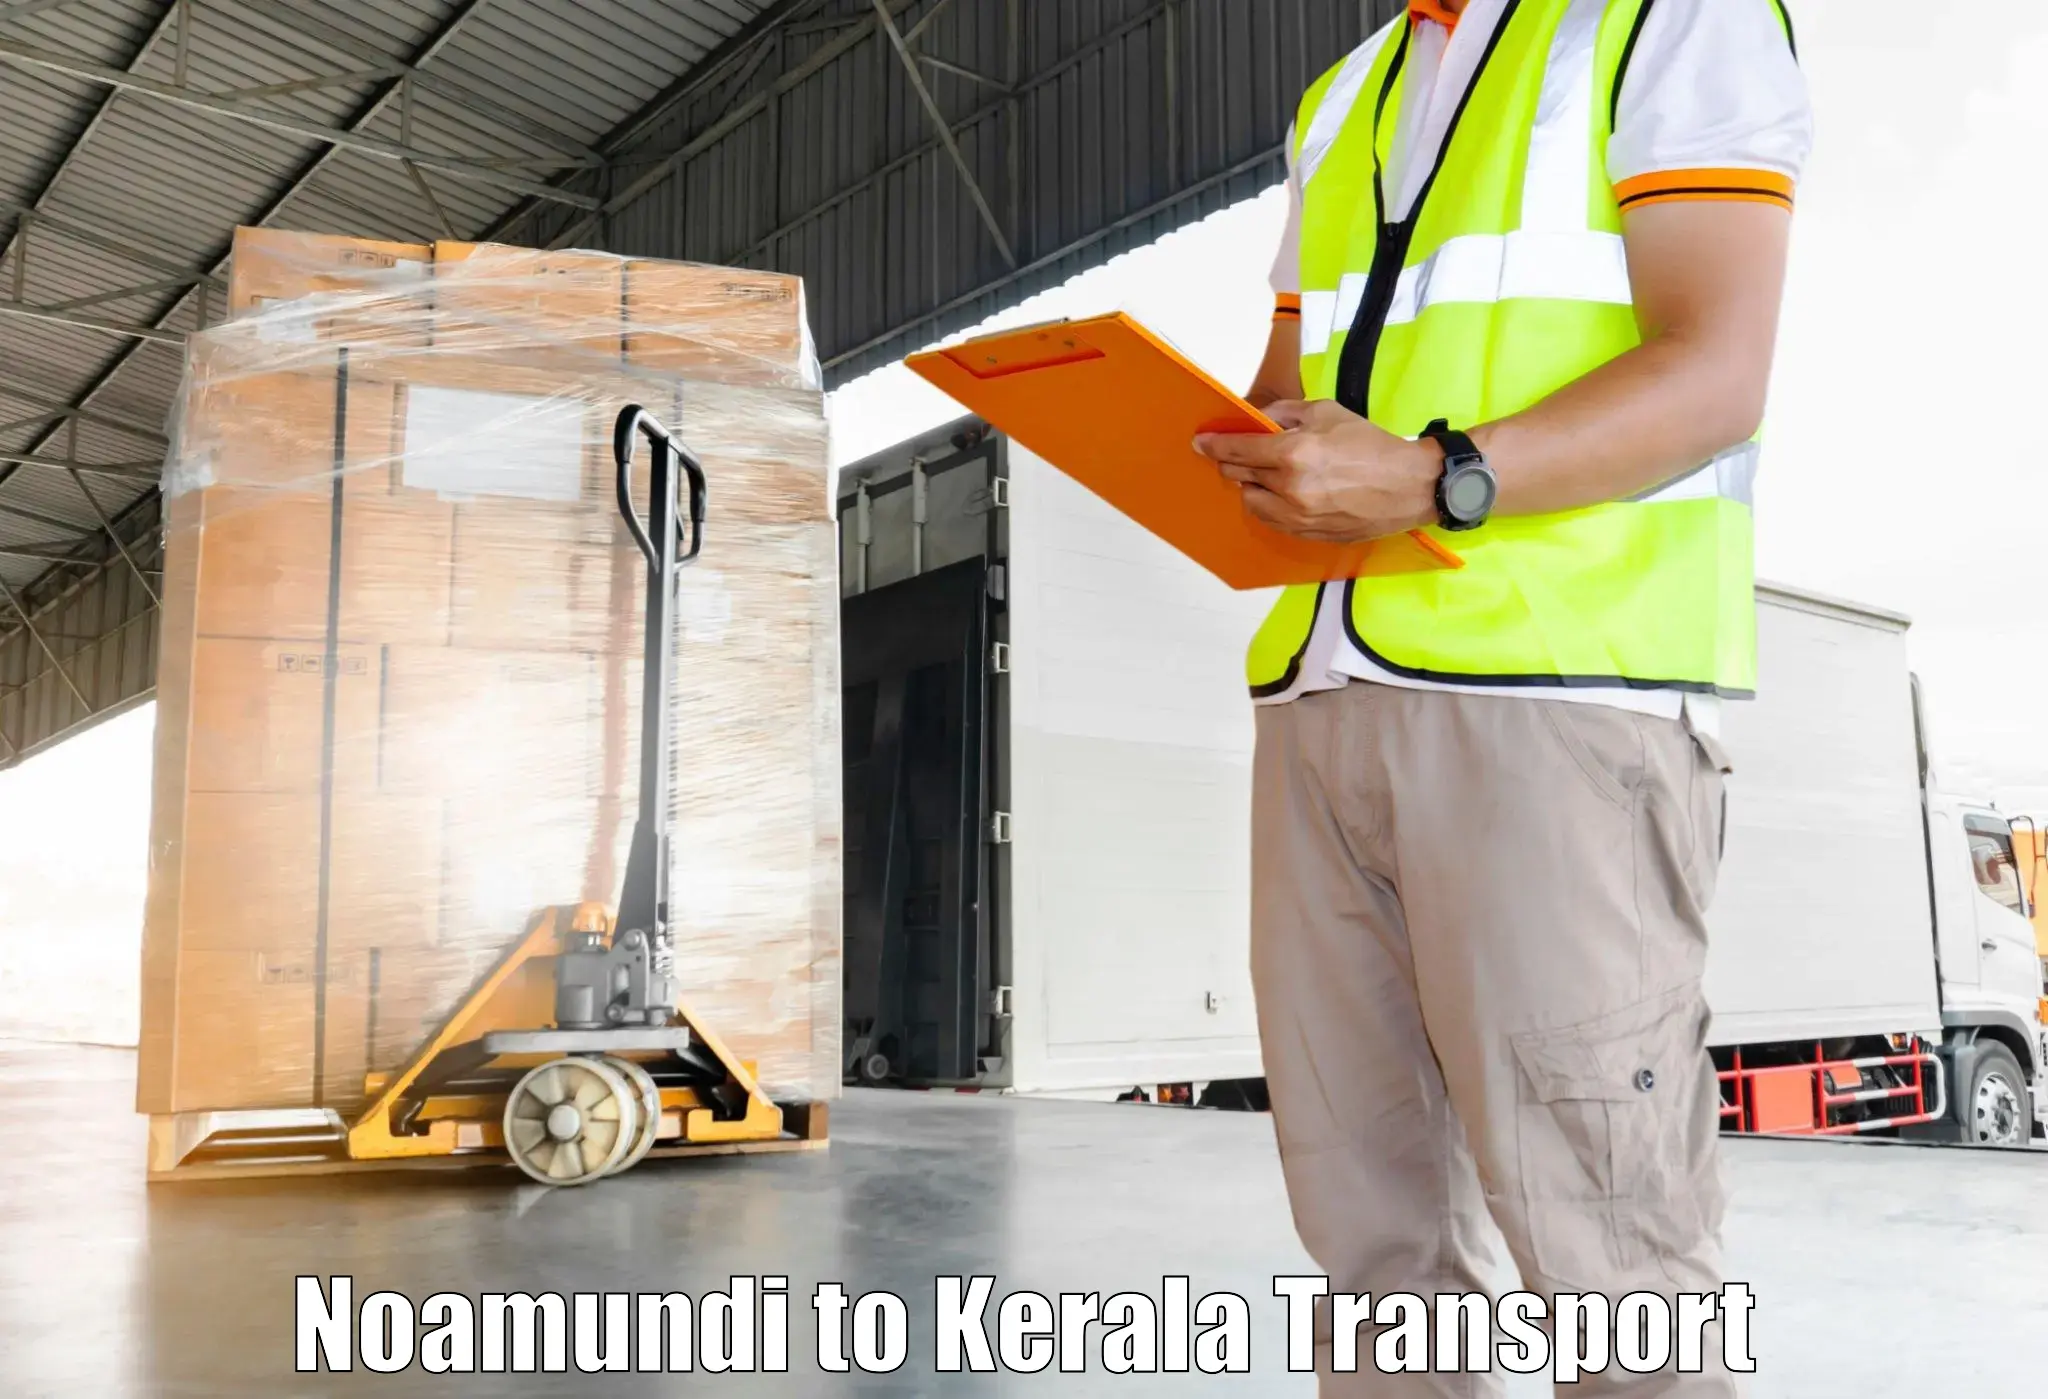 Furniture transport service Noamundi to Munnar